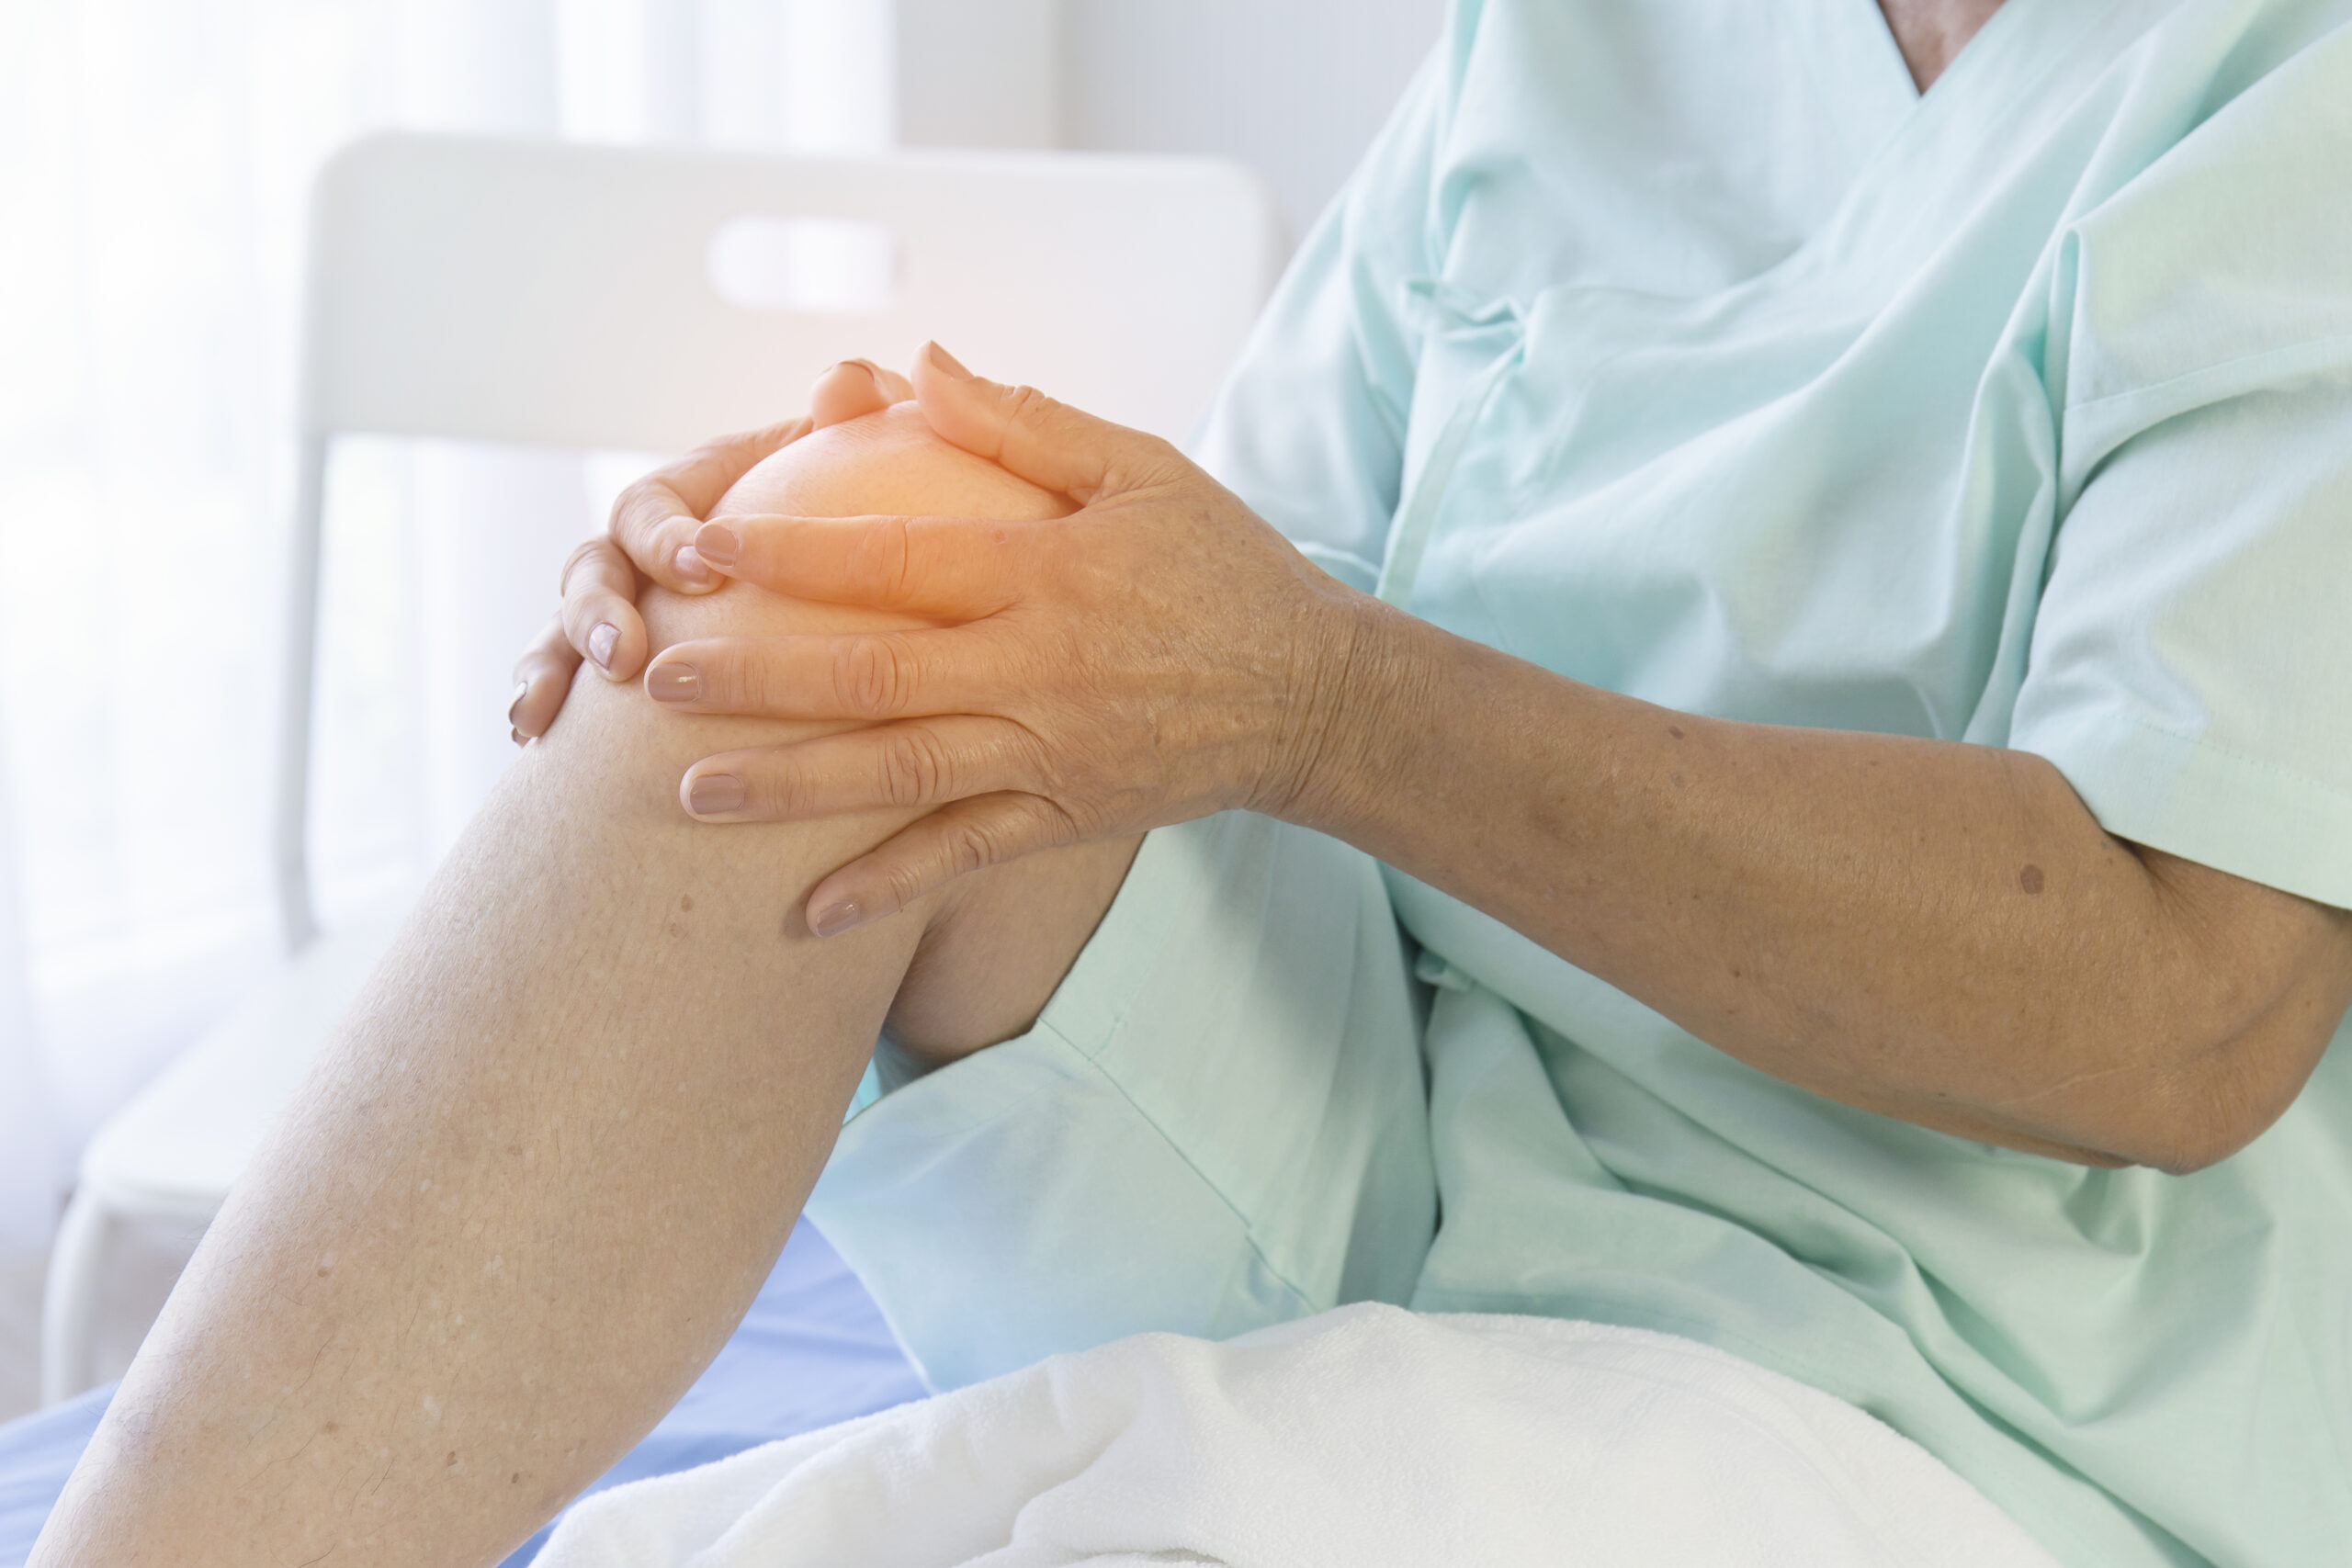 Na zdjęciu widać kobietę, która cierpi na osteoporozę i ma ból kolana. Osteoporoza powoduje osłabienie kości, co zwiększa ryzyko urazów i kontuzji. Ból kolana może być jednym z objawów osteoporozy i wymagać specjalistycznej opieki i leczenia. Zdjęcie to może stanowić inspirację dla osób cierpiących na osteoporozę, aby szukać pomocy medycznej i podjąć odpowiednie kroki w celu złagodzenia bólu i poprawy jakości życia.